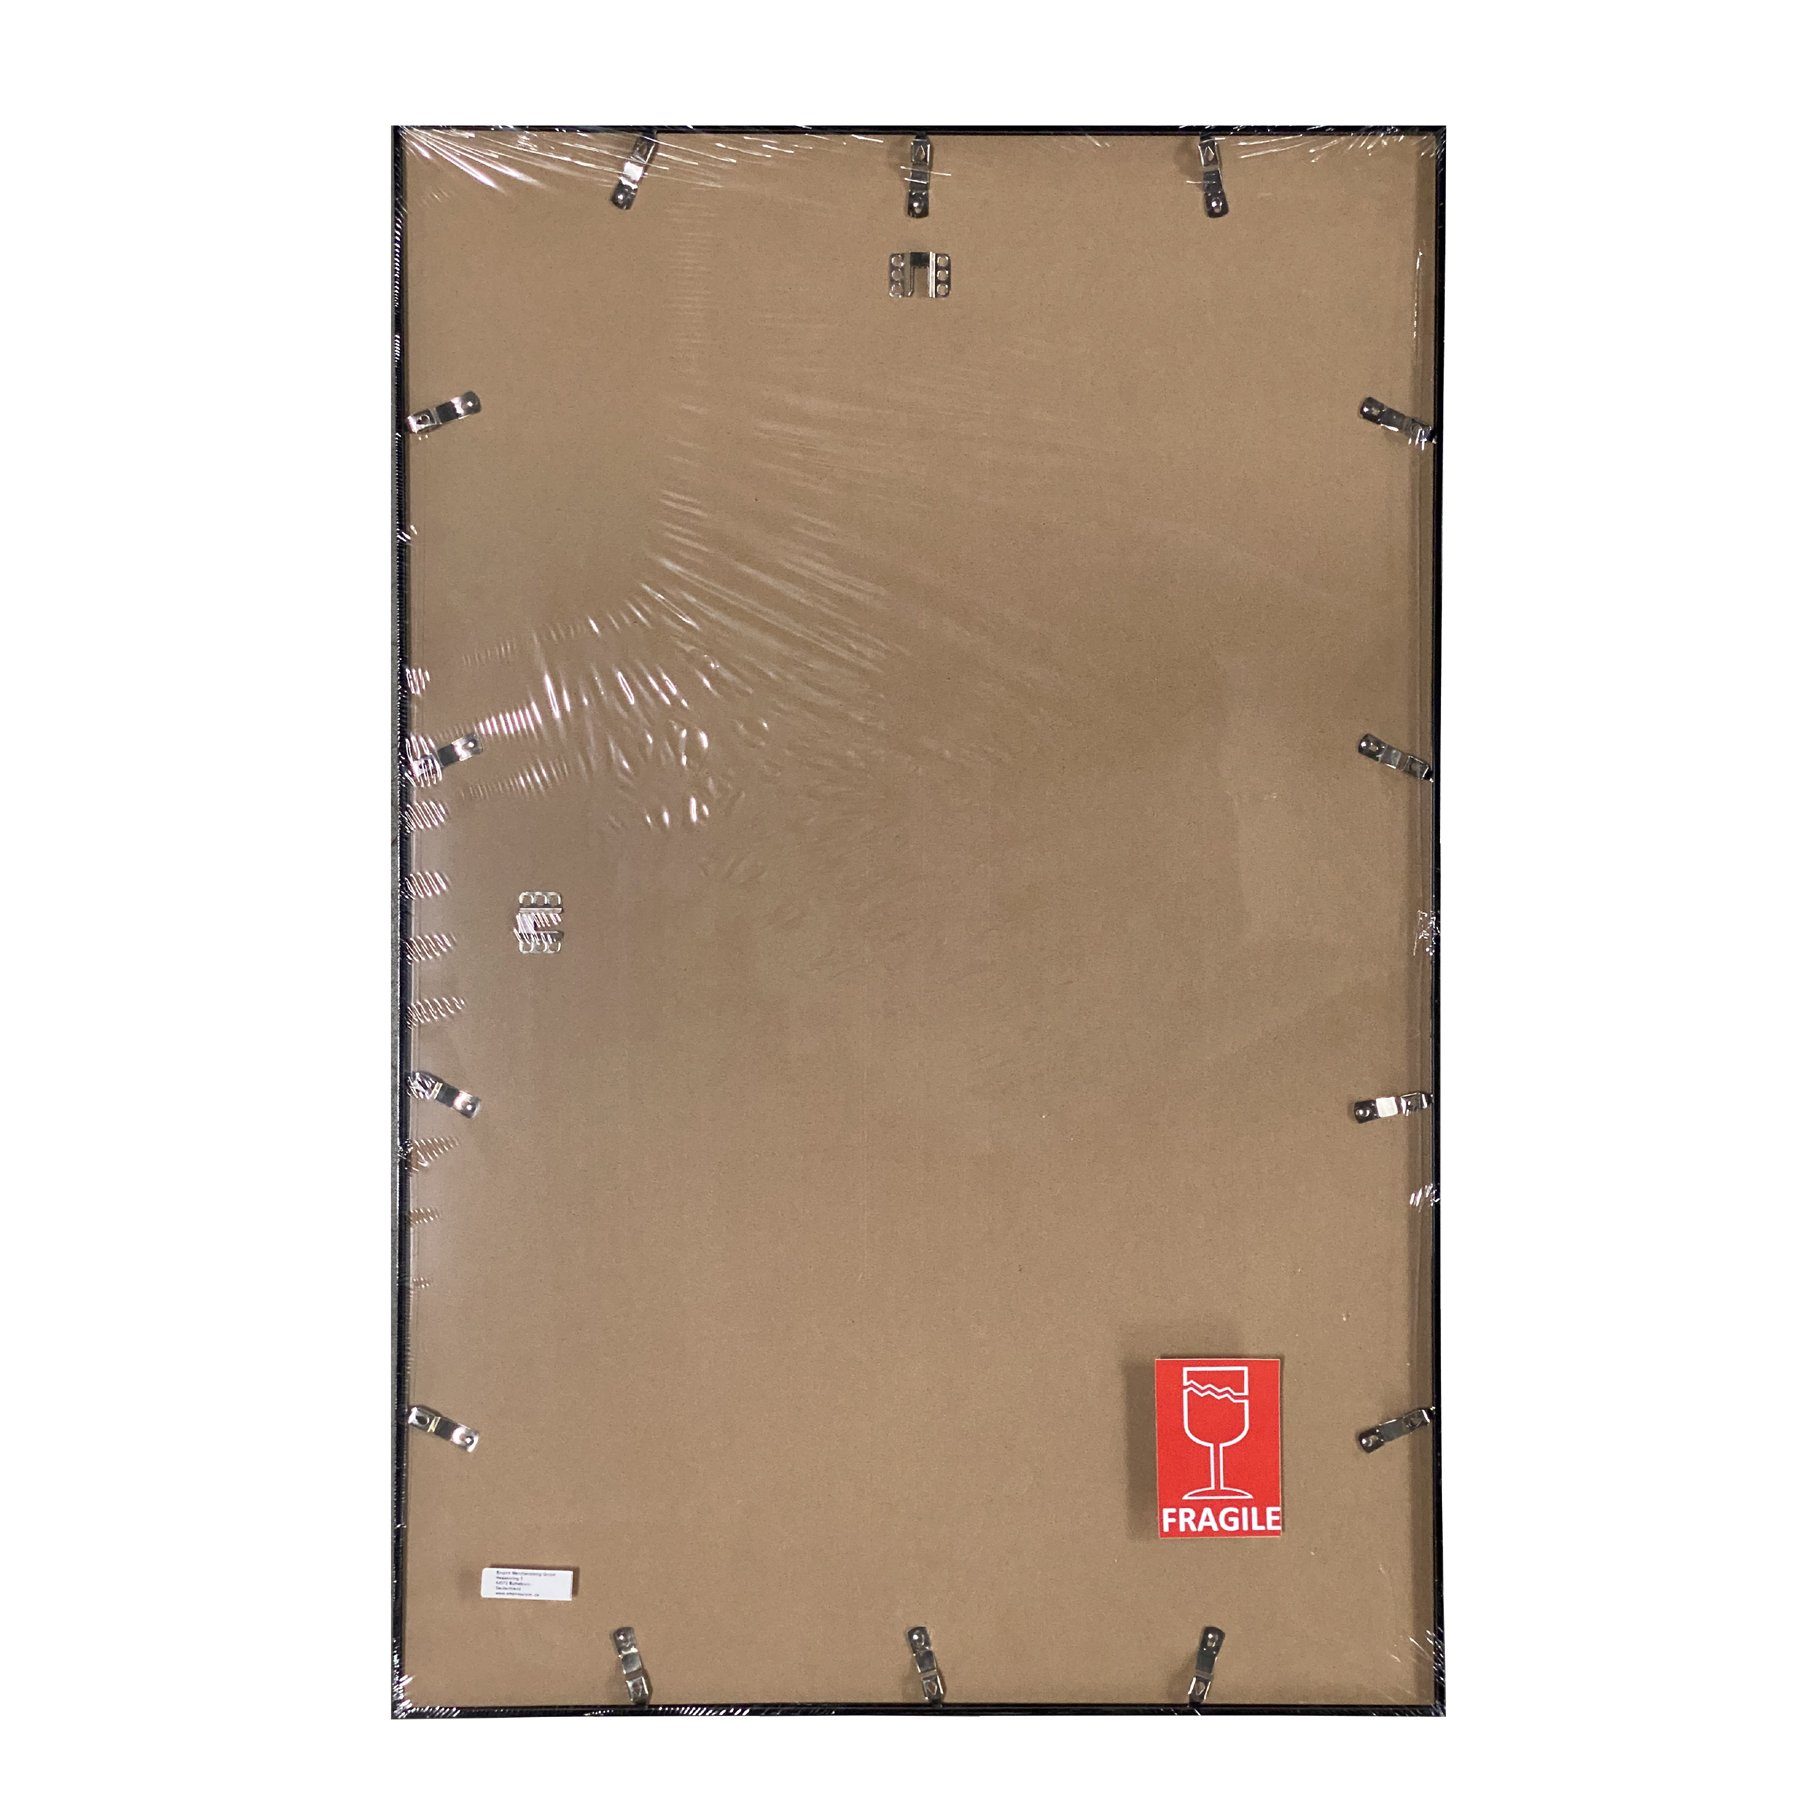 empireposter Rahmen Posterrahmen Wechselrahmen Shinsuke® Acryl-Scheibe mit Maxi-Poster Profil: gelb Farbe 61x91,5cm, Kunststoff 15mm